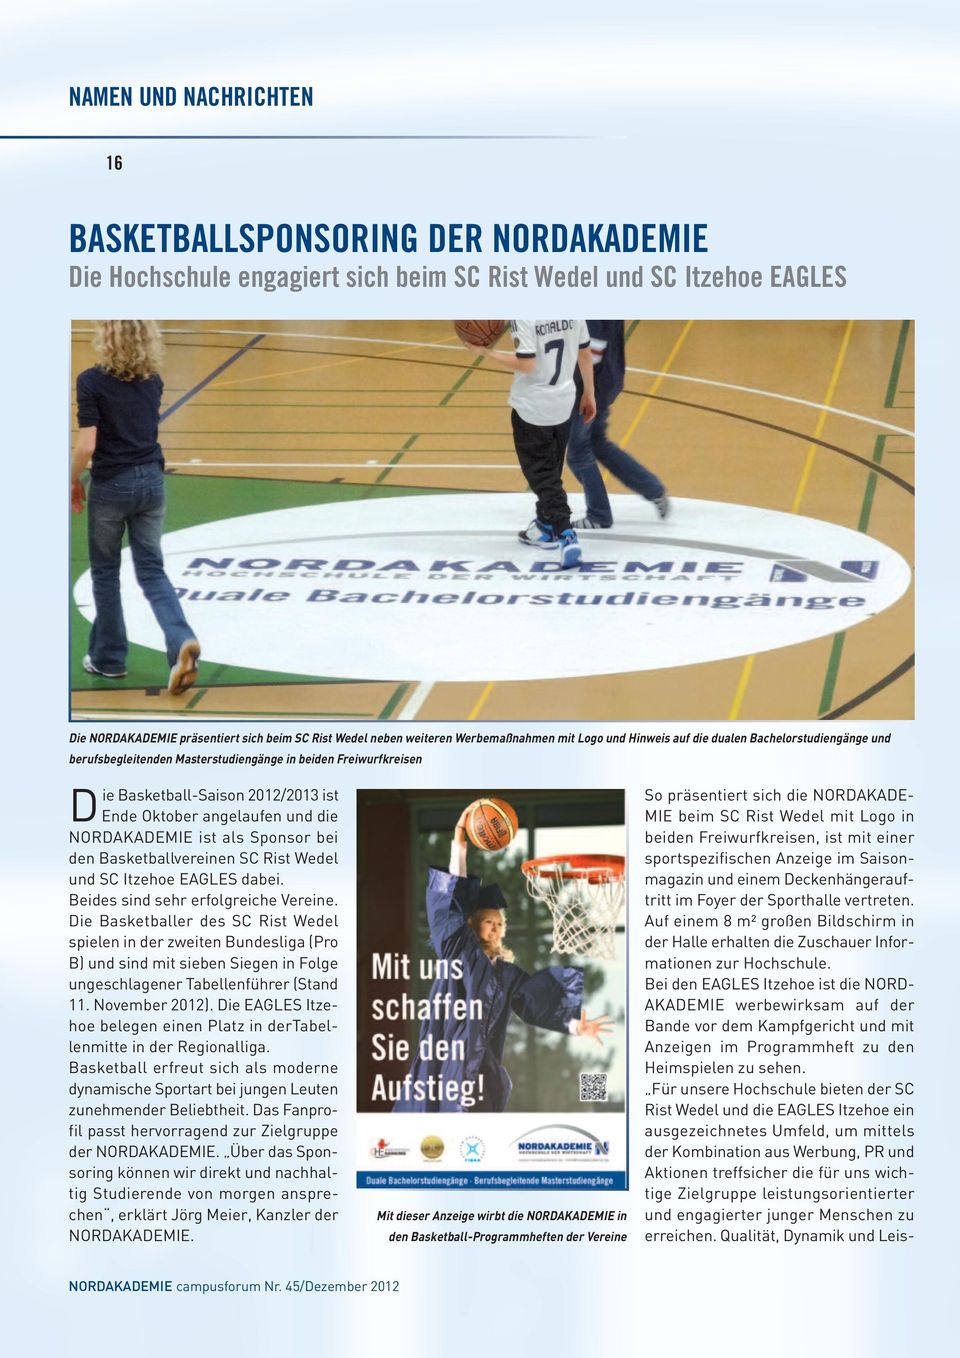 angelaufen und die NORDAKADEMIE ist als Sponsor bei den Basketballvereinen SC Rist Wedel und SC Itzehoe EAGLES dabei. Beides sind sehr erfolgreiche Vereine.